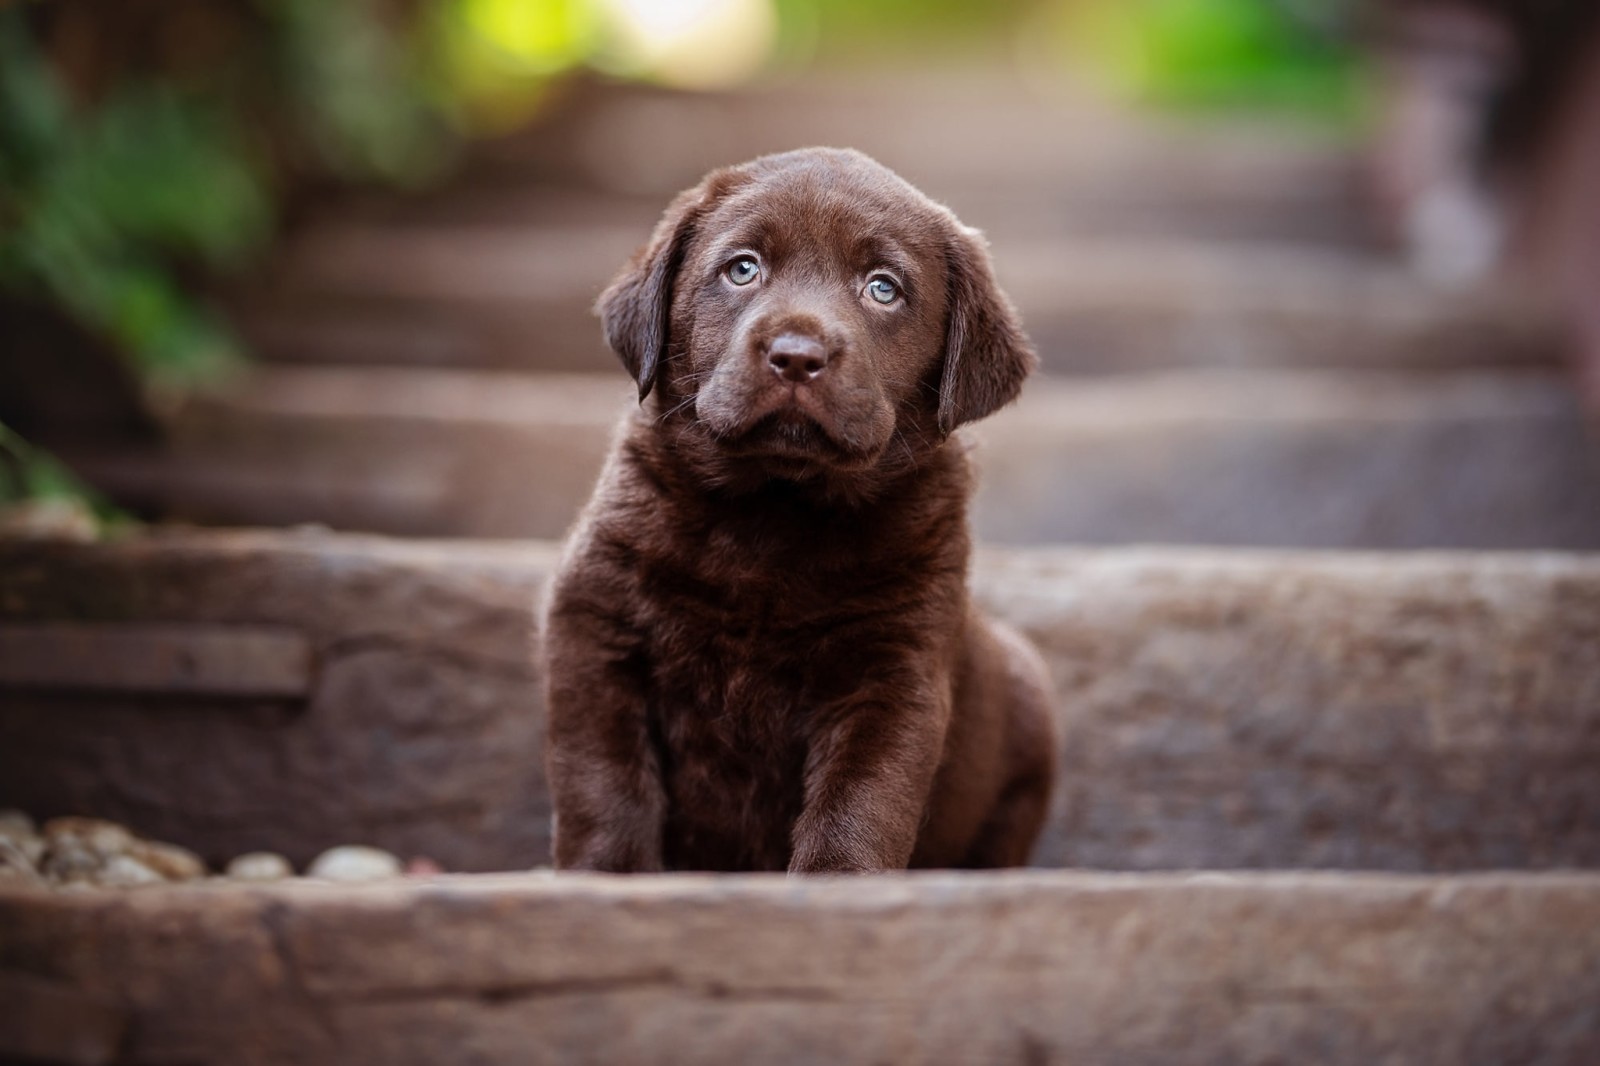 anjing, bayi, anak anjing, duduk, cokelat, cokelat, tangga, Retriever